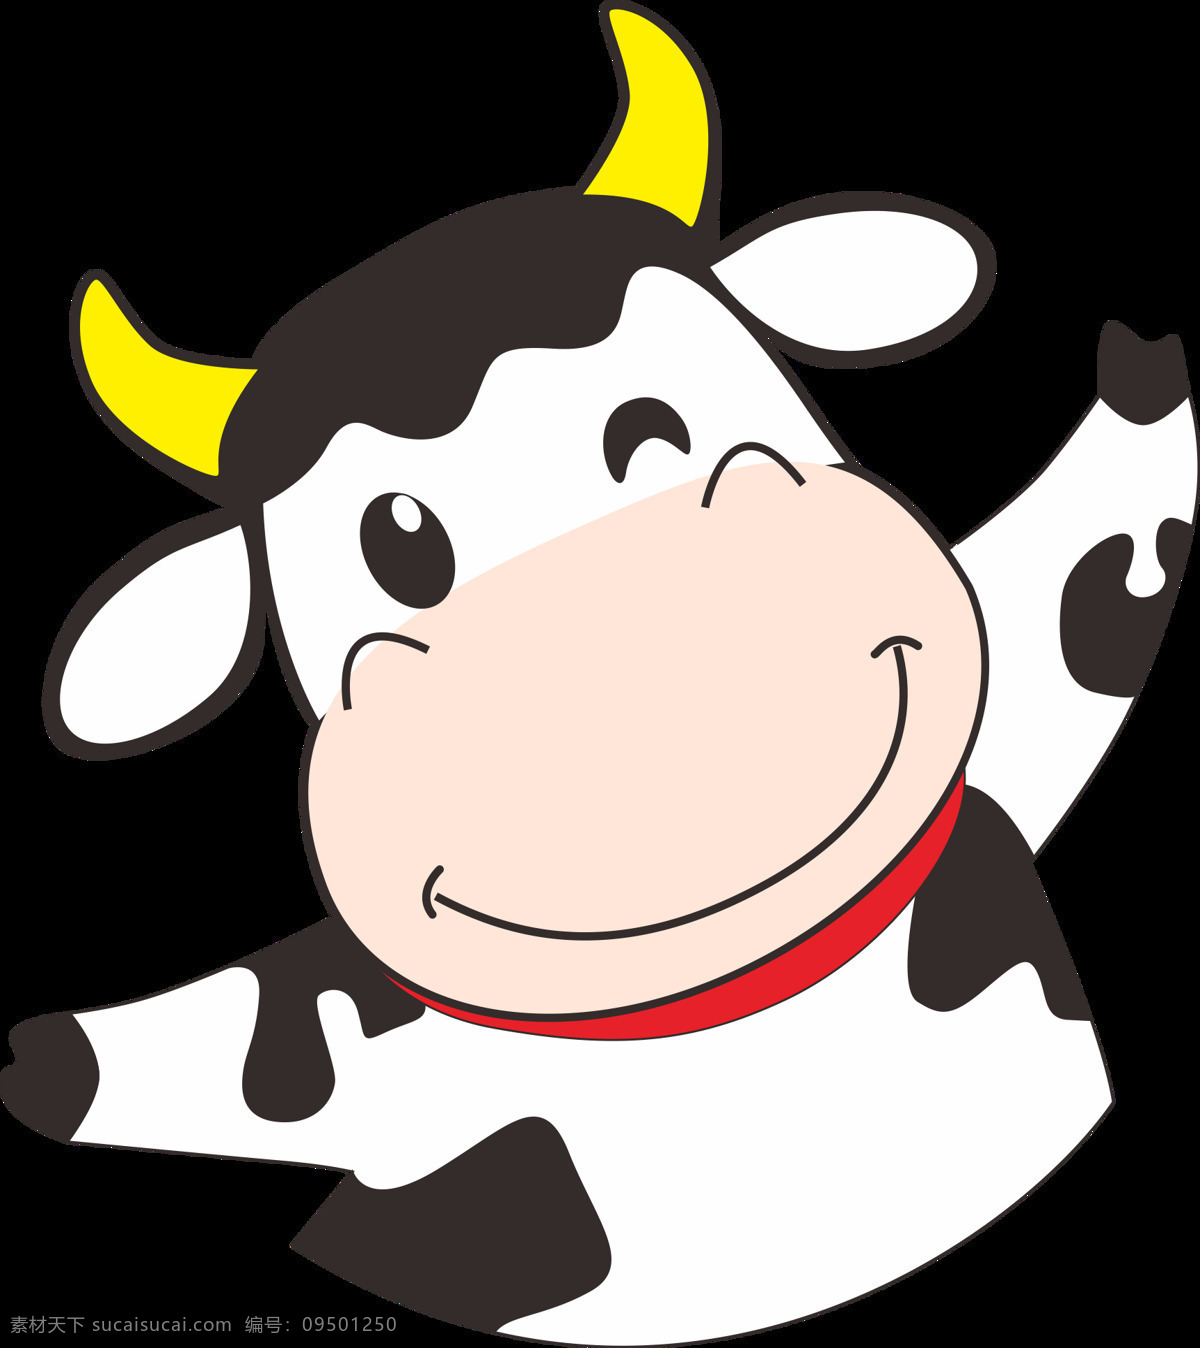 卡通奶牛 奶牛 可爱 卡通 可爱奶牛 动漫奶牛 简约奶牛 牛仔 卡通设计 牛角 小牛仔 牧场 透明奶牛 牛奶 牛 可爱牛 卡通牛